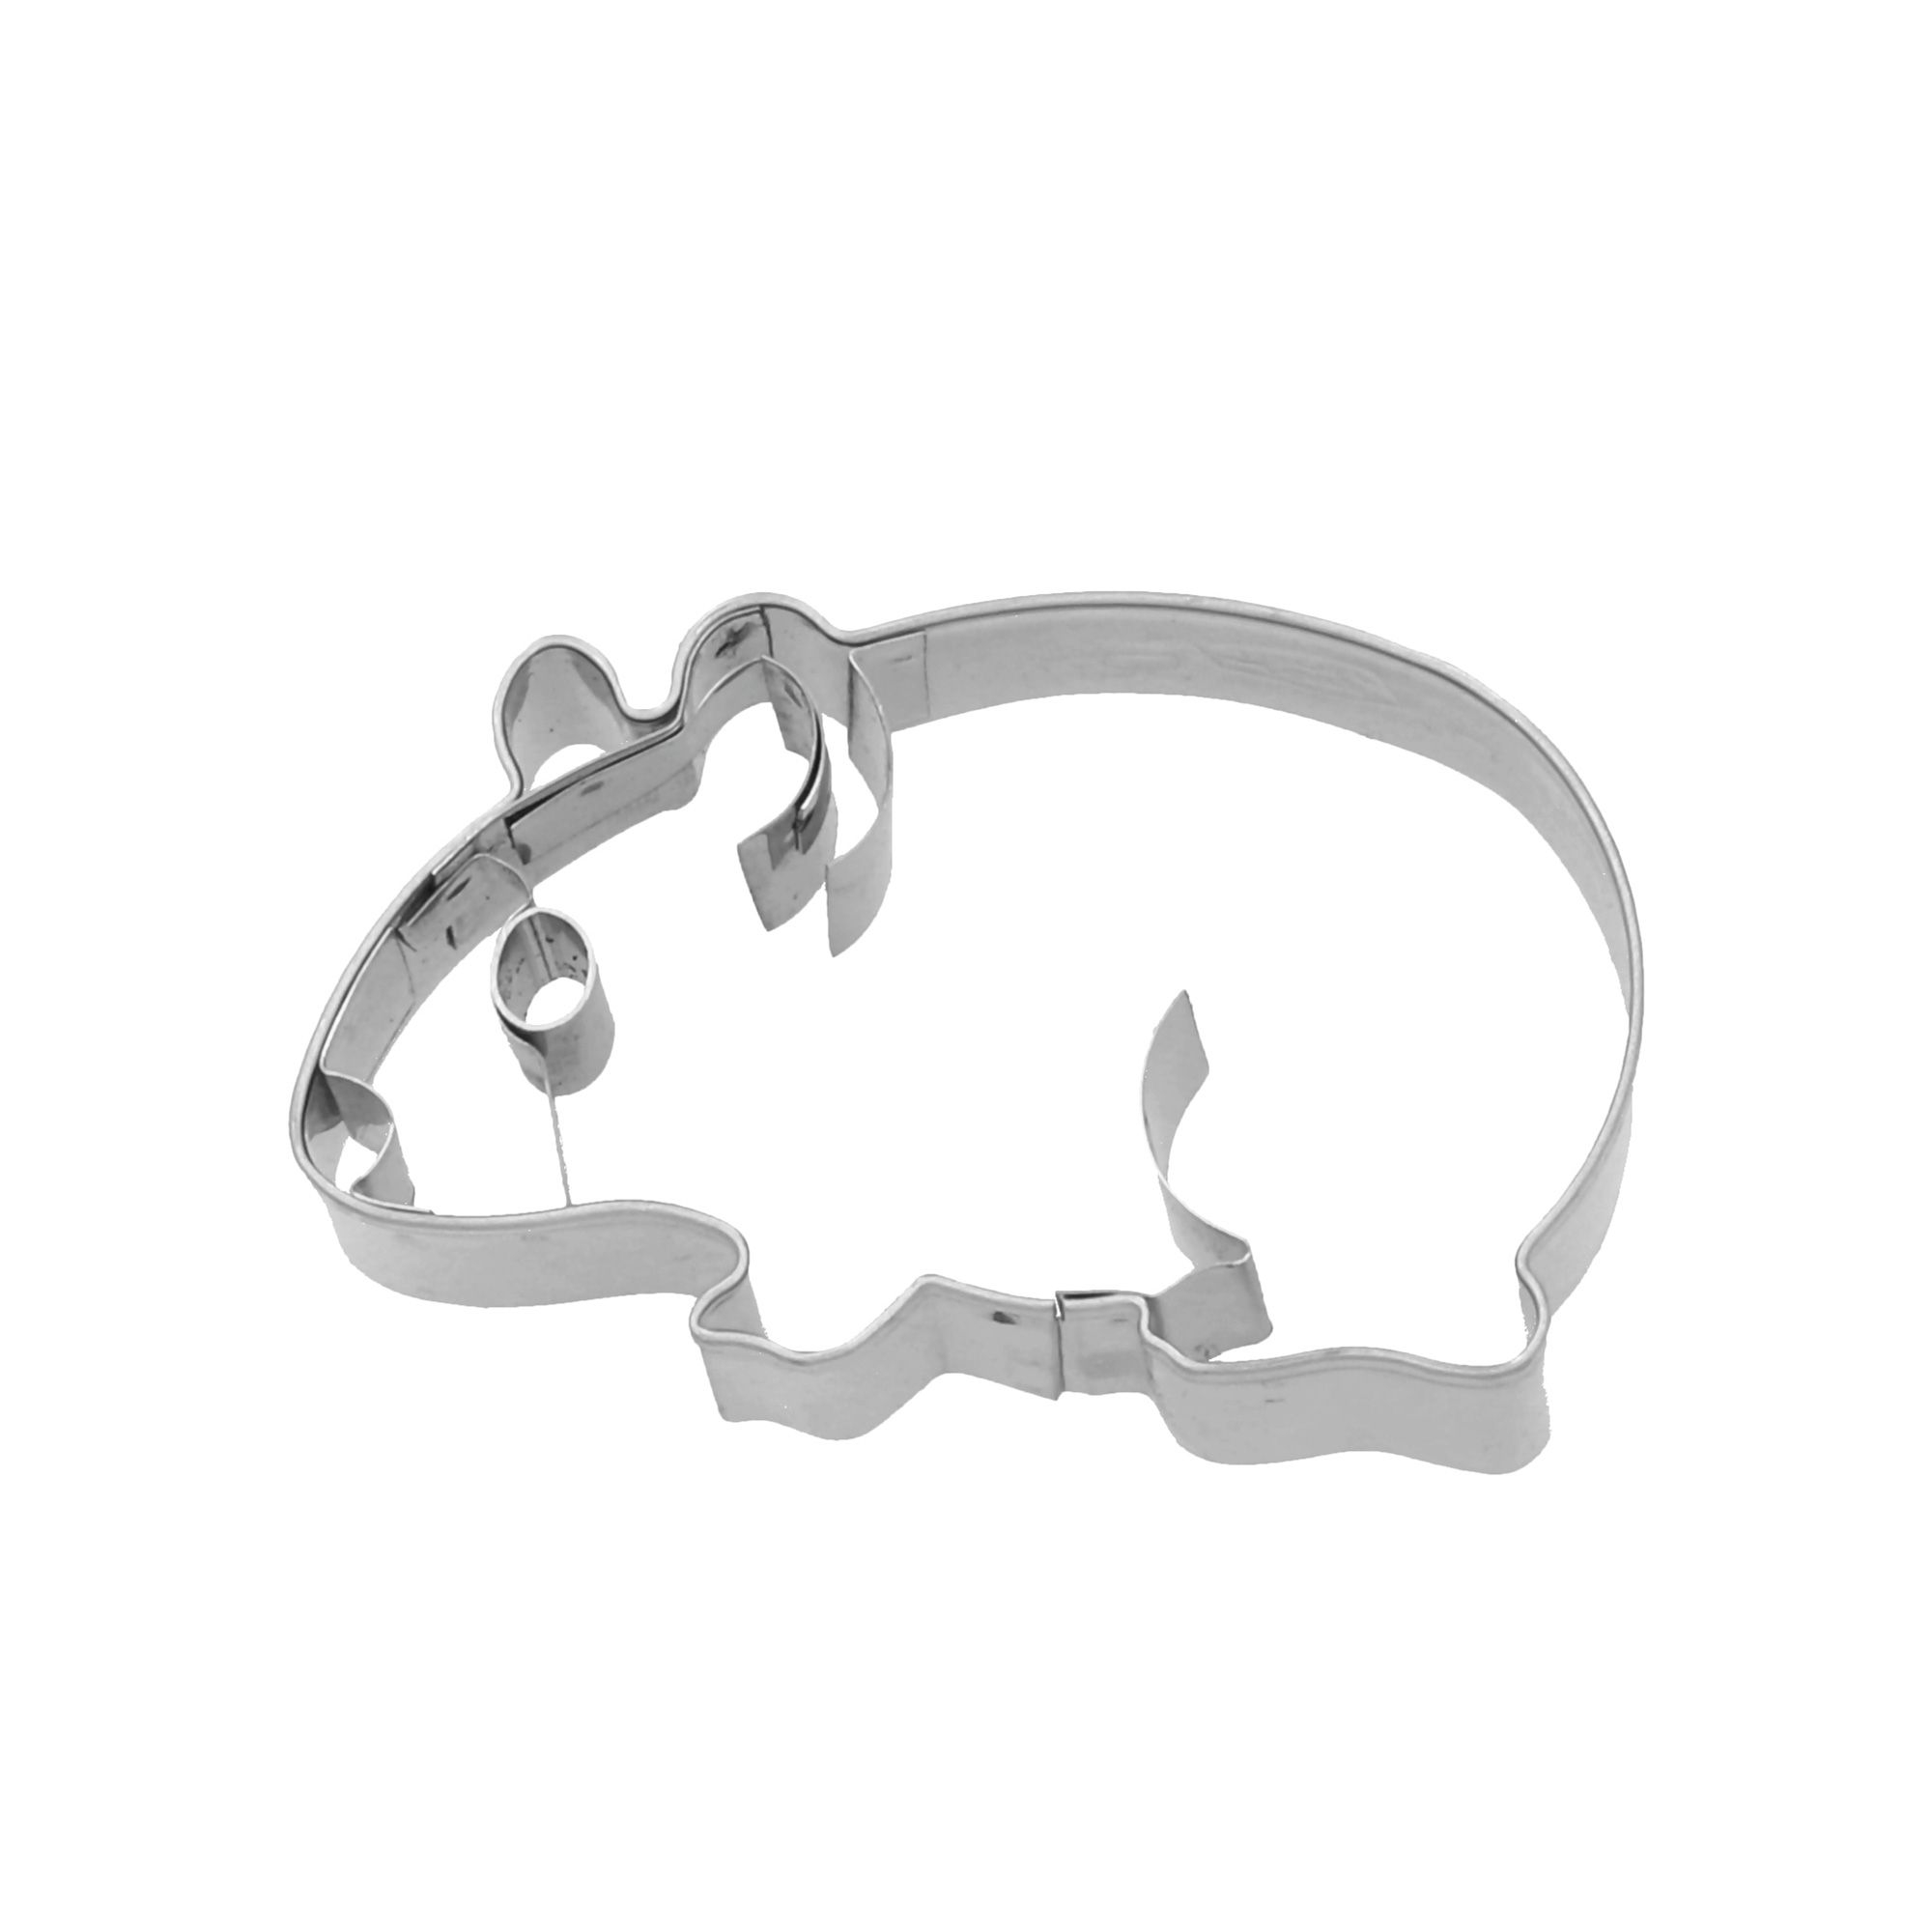 RBV Birkmann - Cookie cutter guinea pig - 7 cm